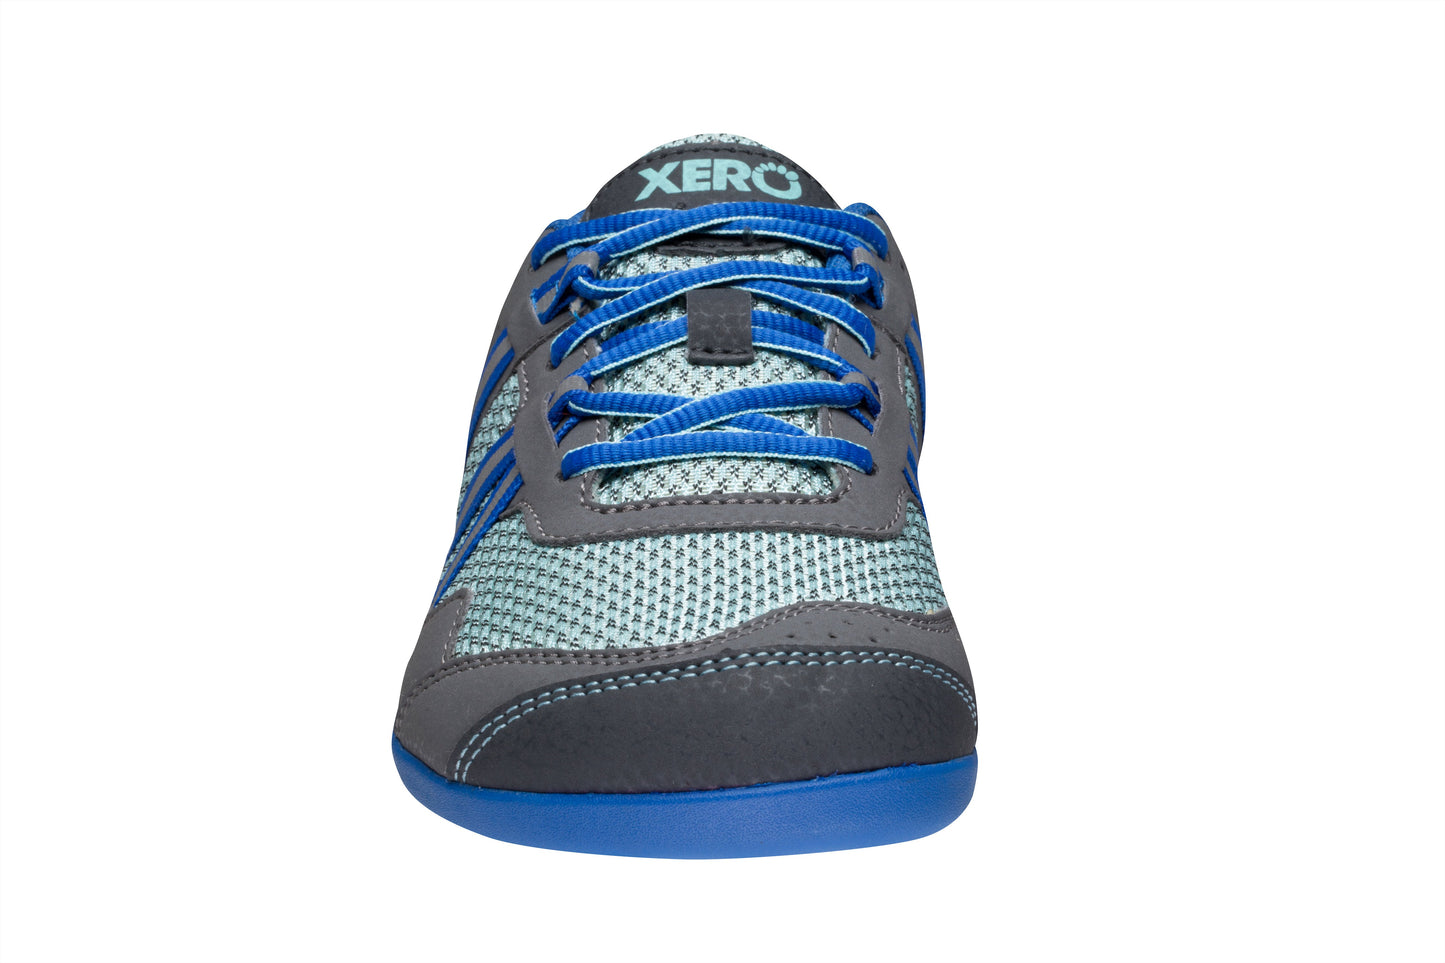 Xero Shoes Prio Womens barfods træningssko til kvinder i farven nautical blue, forfra